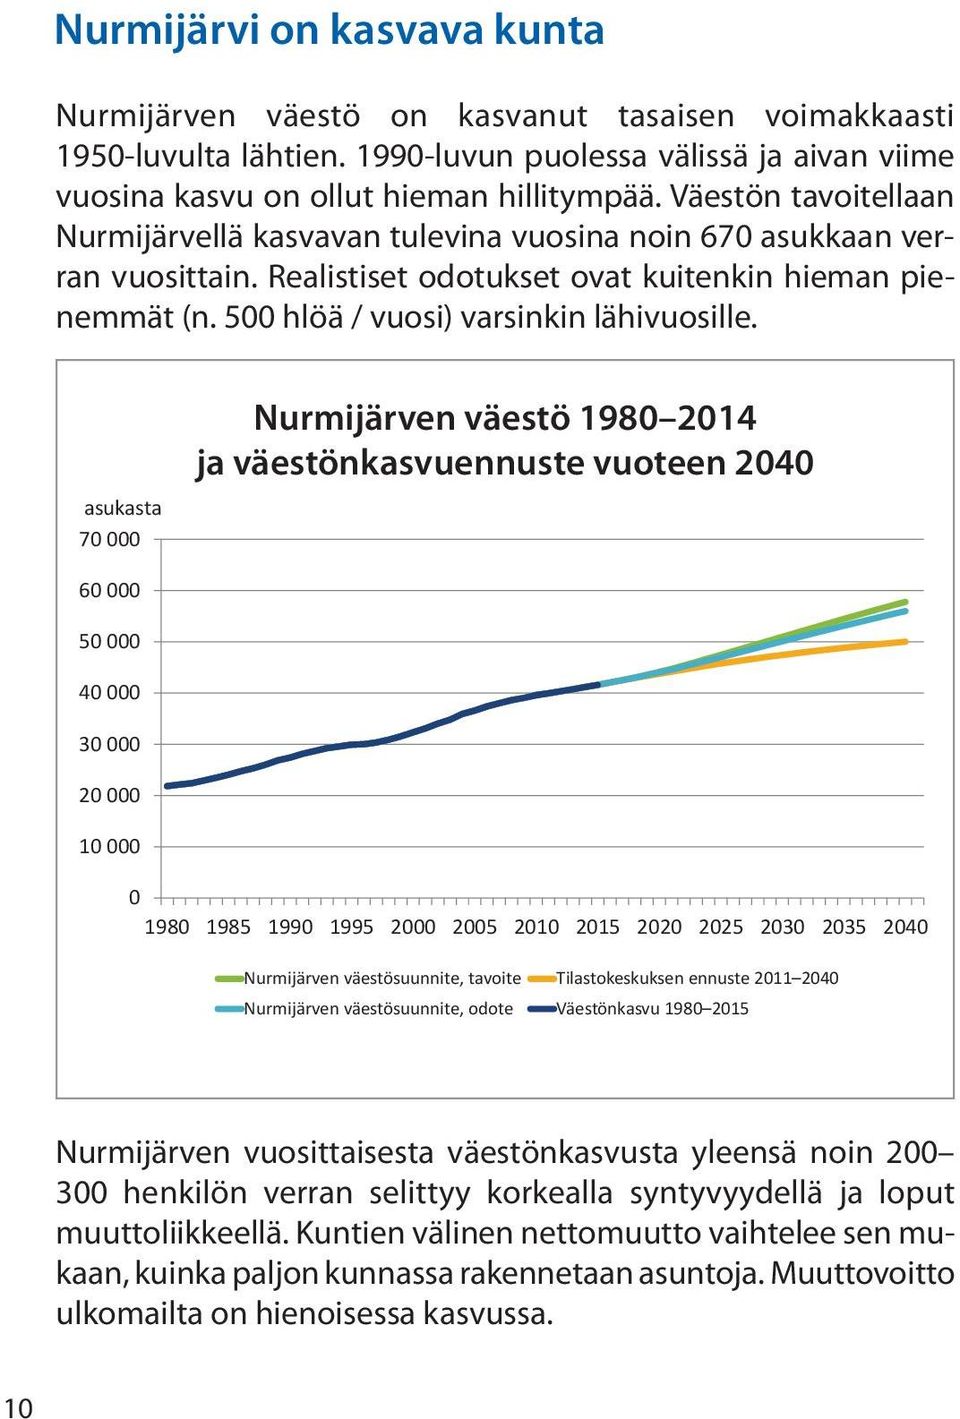 asukasta 70 000 Nurmijärven väestö 1980 2014 ja väestönkasvuennuste vuoteen 2040 Nurmijärven väestö 1980 2015 ja väestön kasvuennusteet vuoteen 2039 60 000 50 000000 40 000 30 000 20 000000 10 000 0